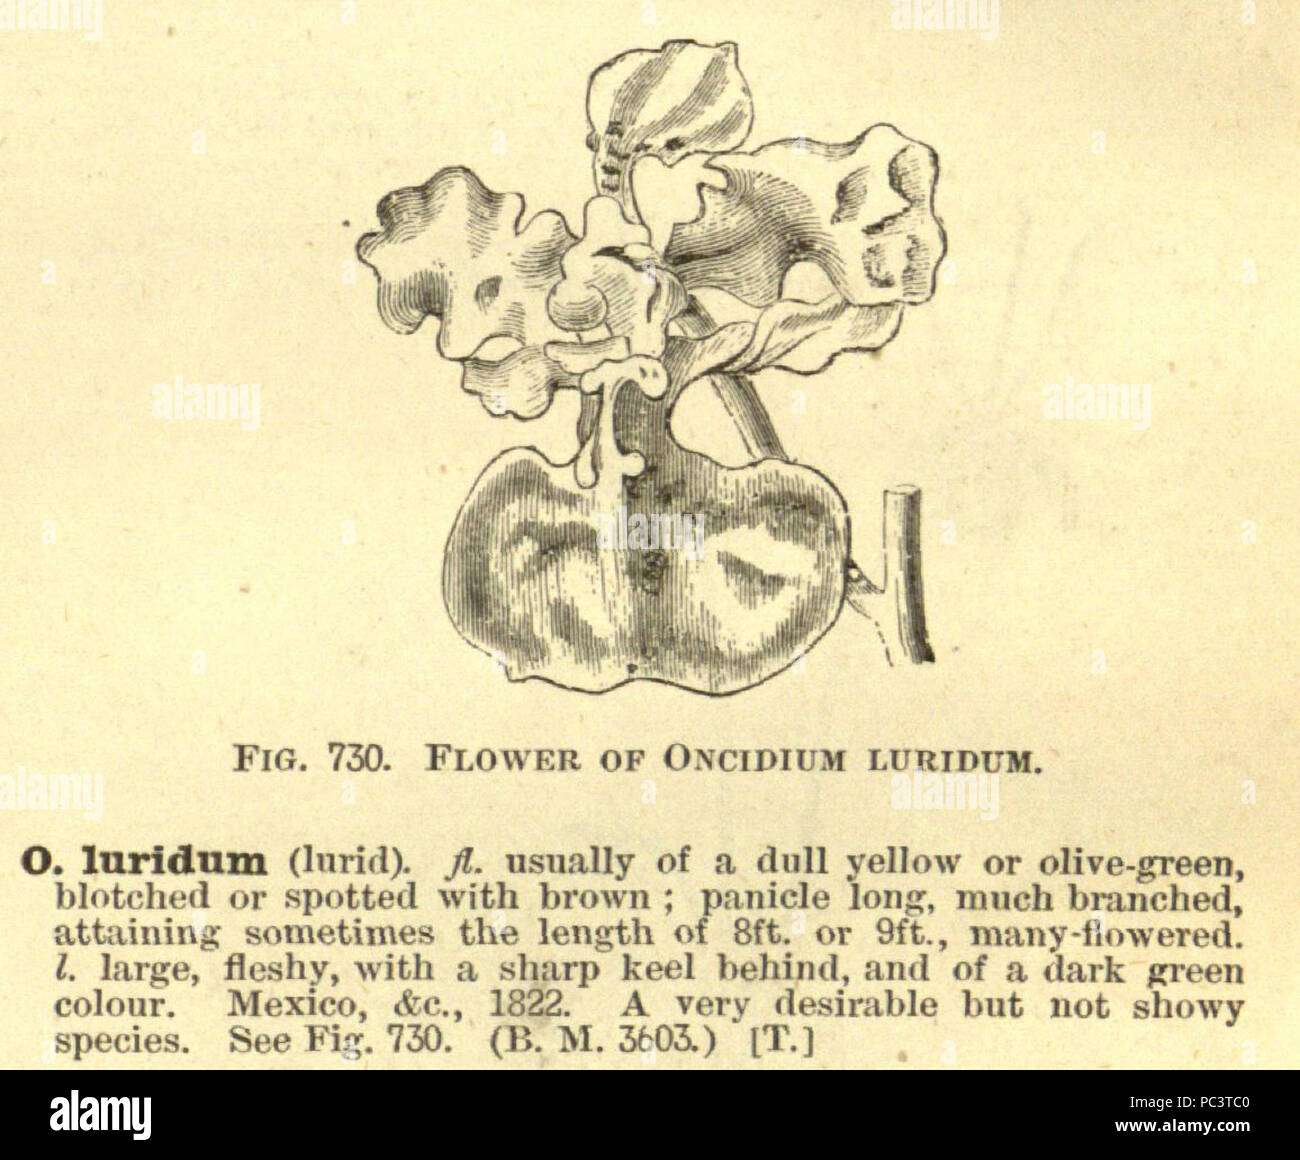 456 Oncidium luridum - cutout from Enc.Hort.5-487 (1884-1888) Stock Photo